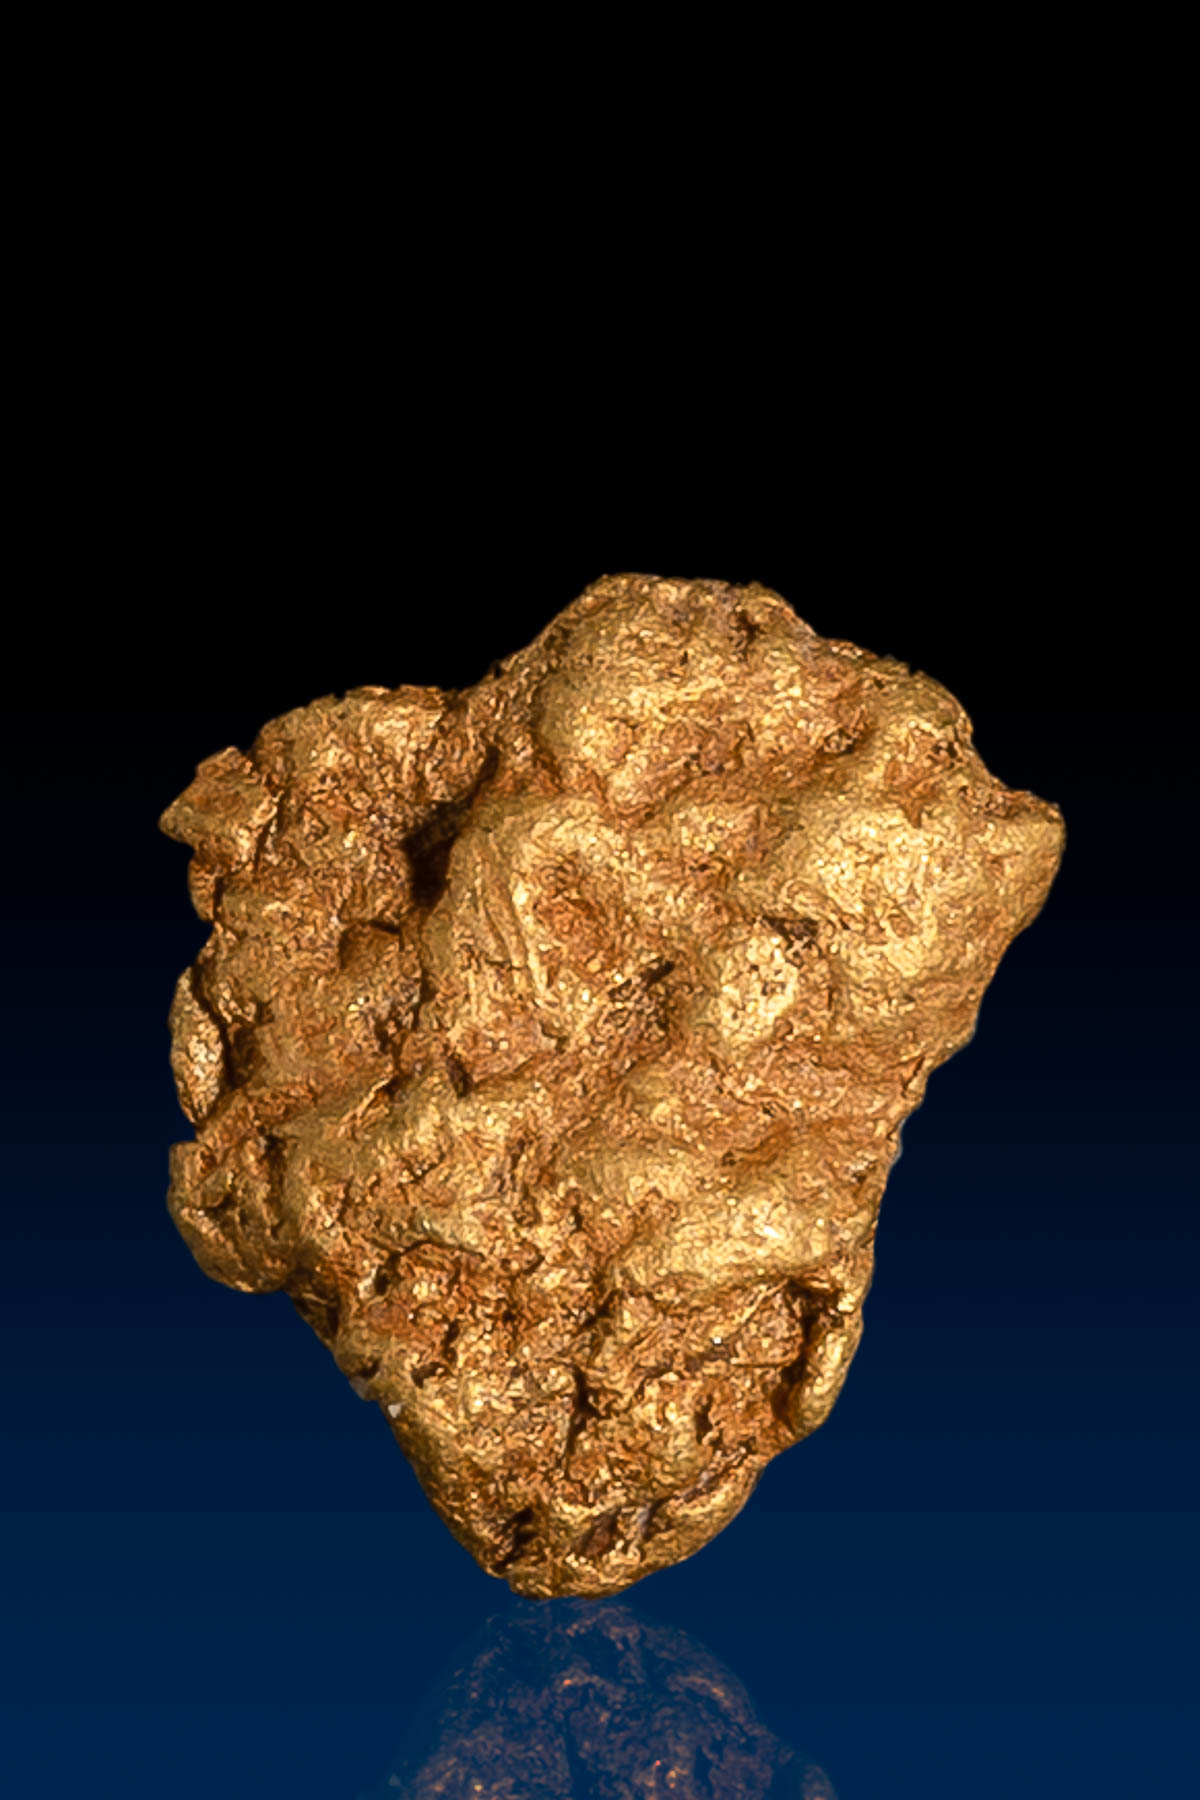 Natural Arizona Wedge Shaped Natural Gold Nugget - 1.04 grams